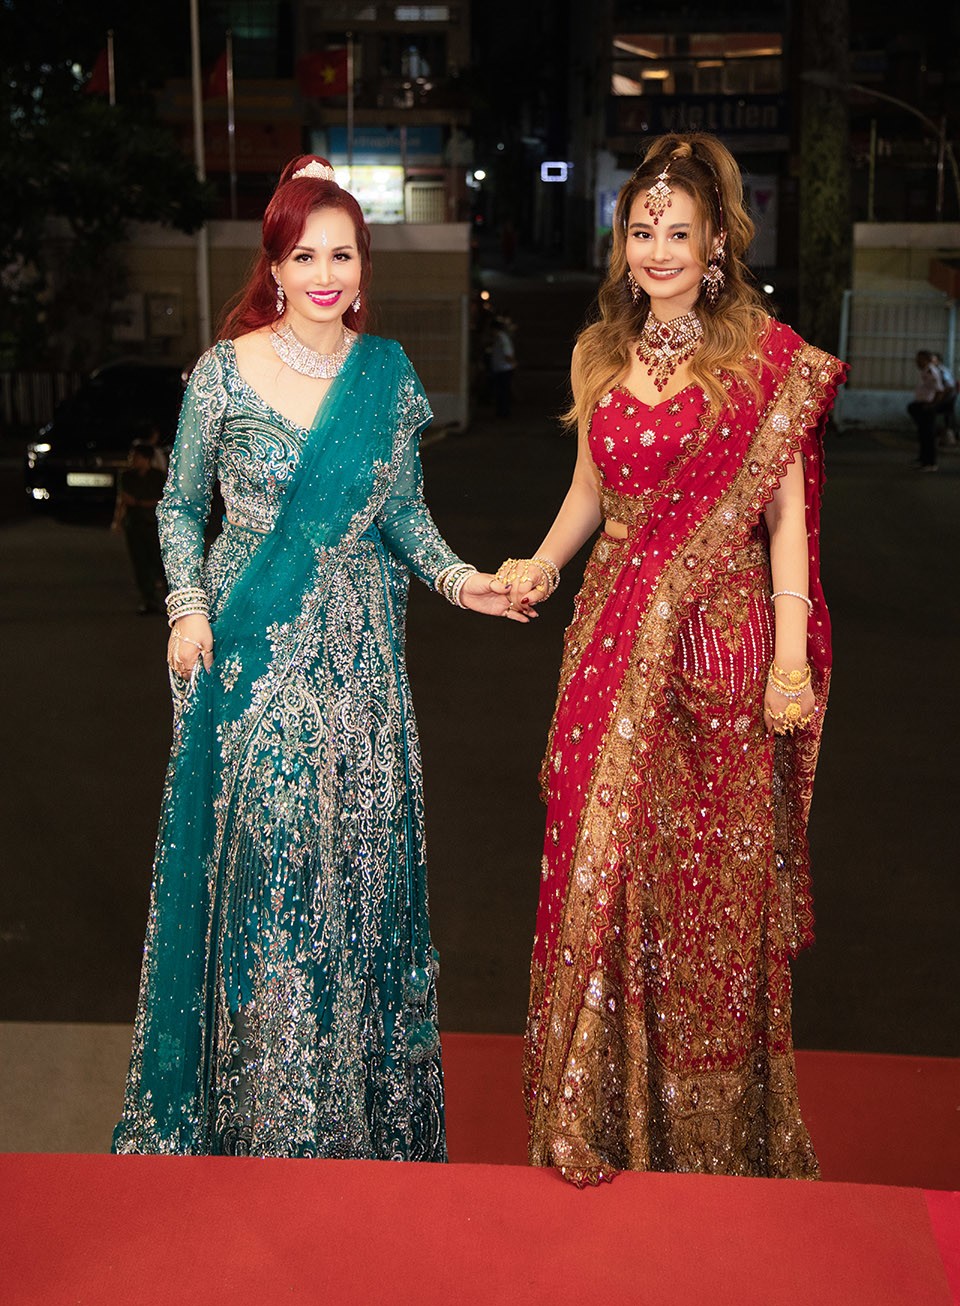 Con gái Diệu Hoa và chồng Ấn Độ bị nhầm là hoa hậu vì quá xinh đẹp - 3